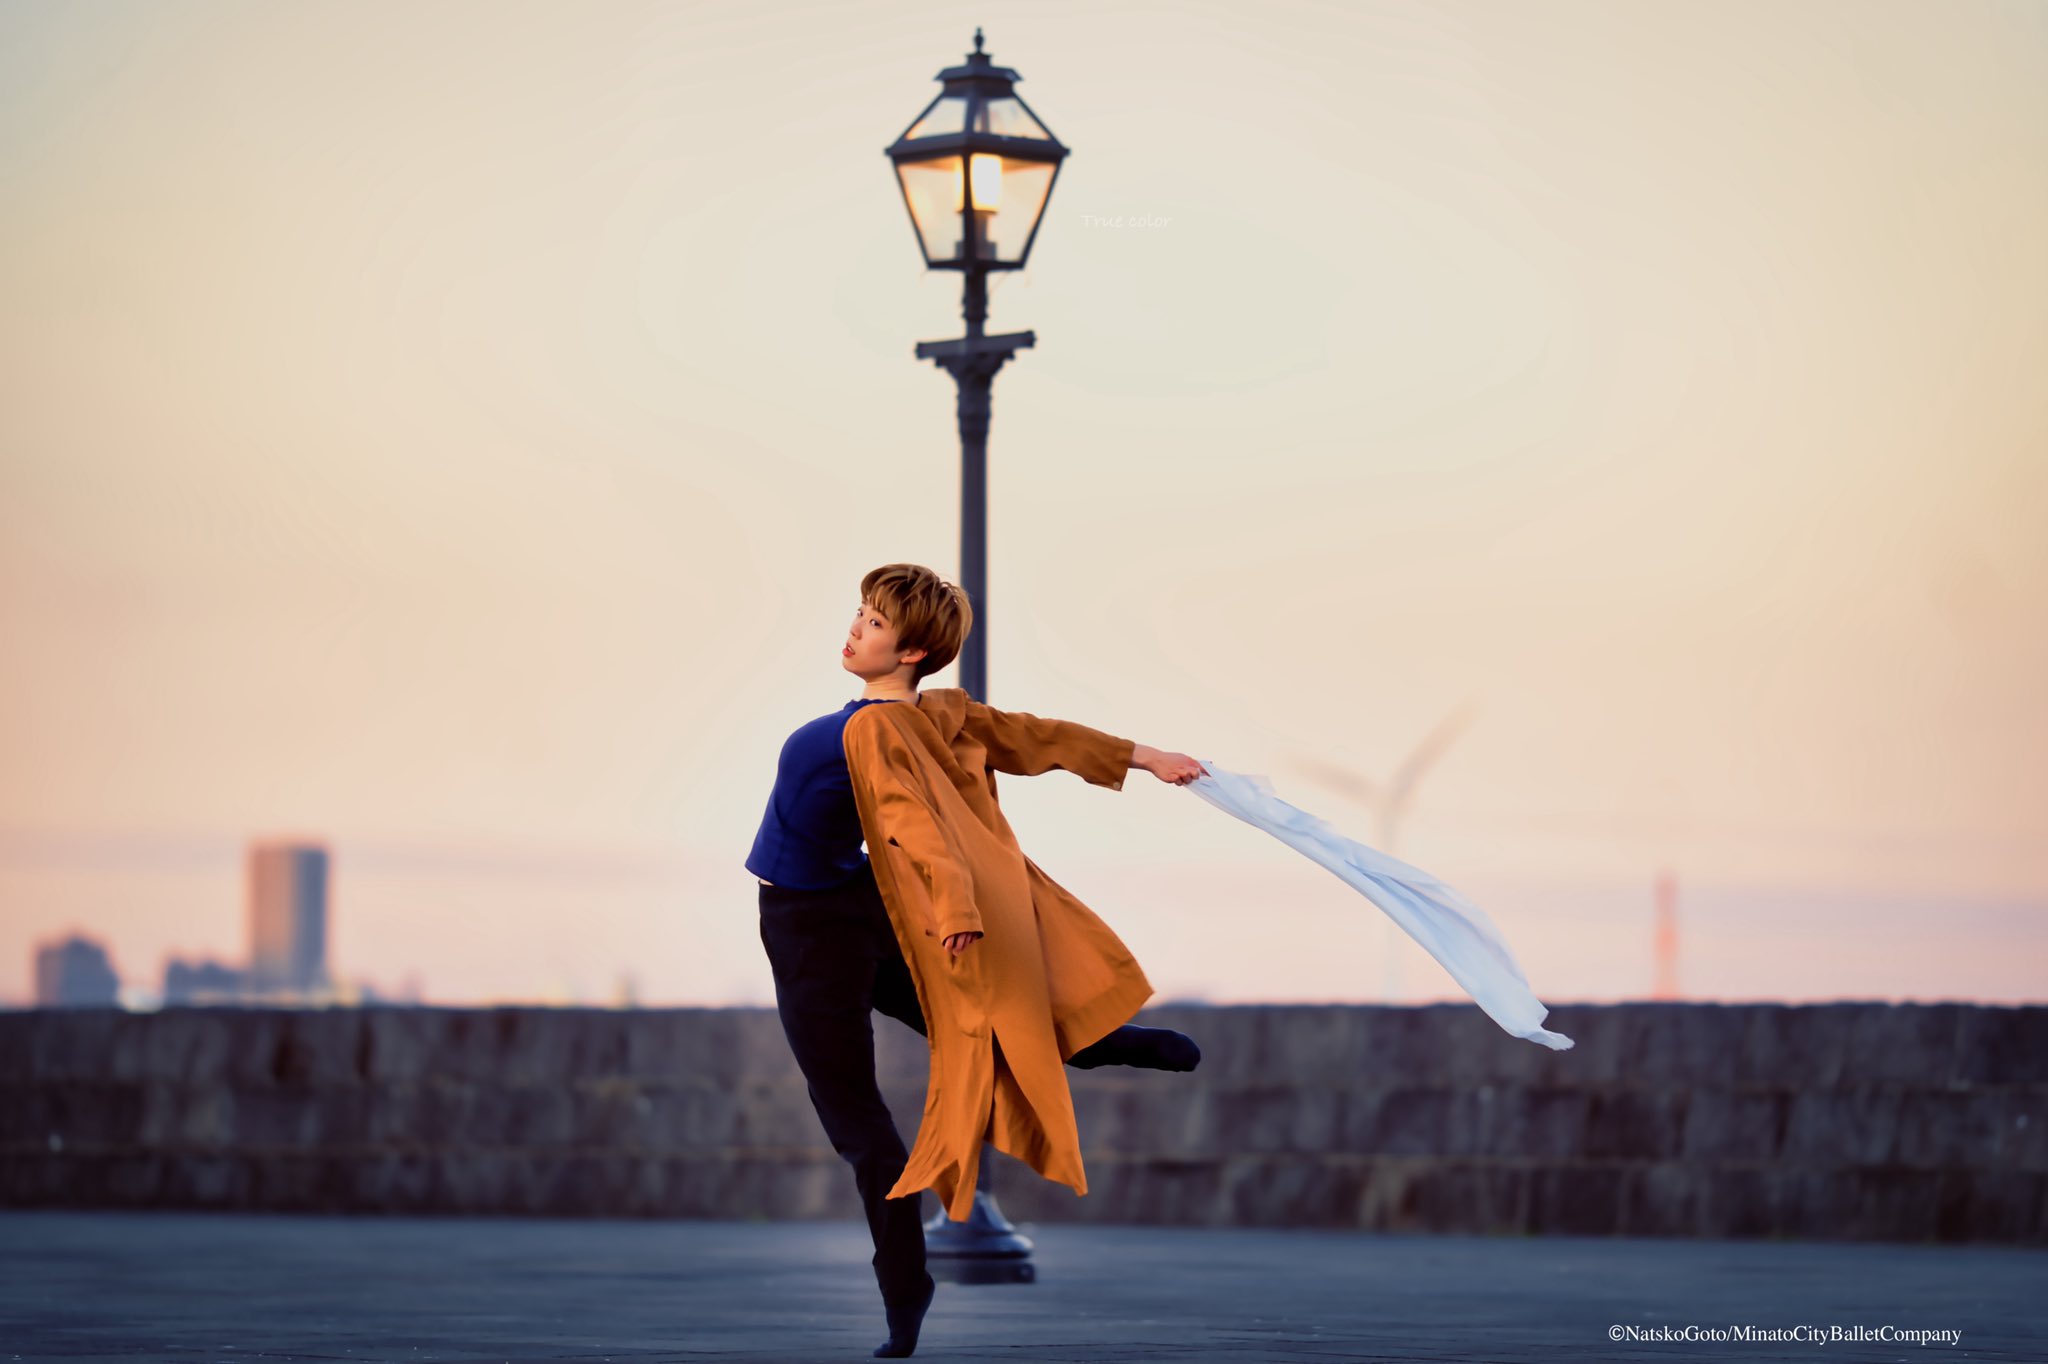 「風を切る」ダンサー 上田舞香 copyright Natsko Goto/Minato City Ballet Company